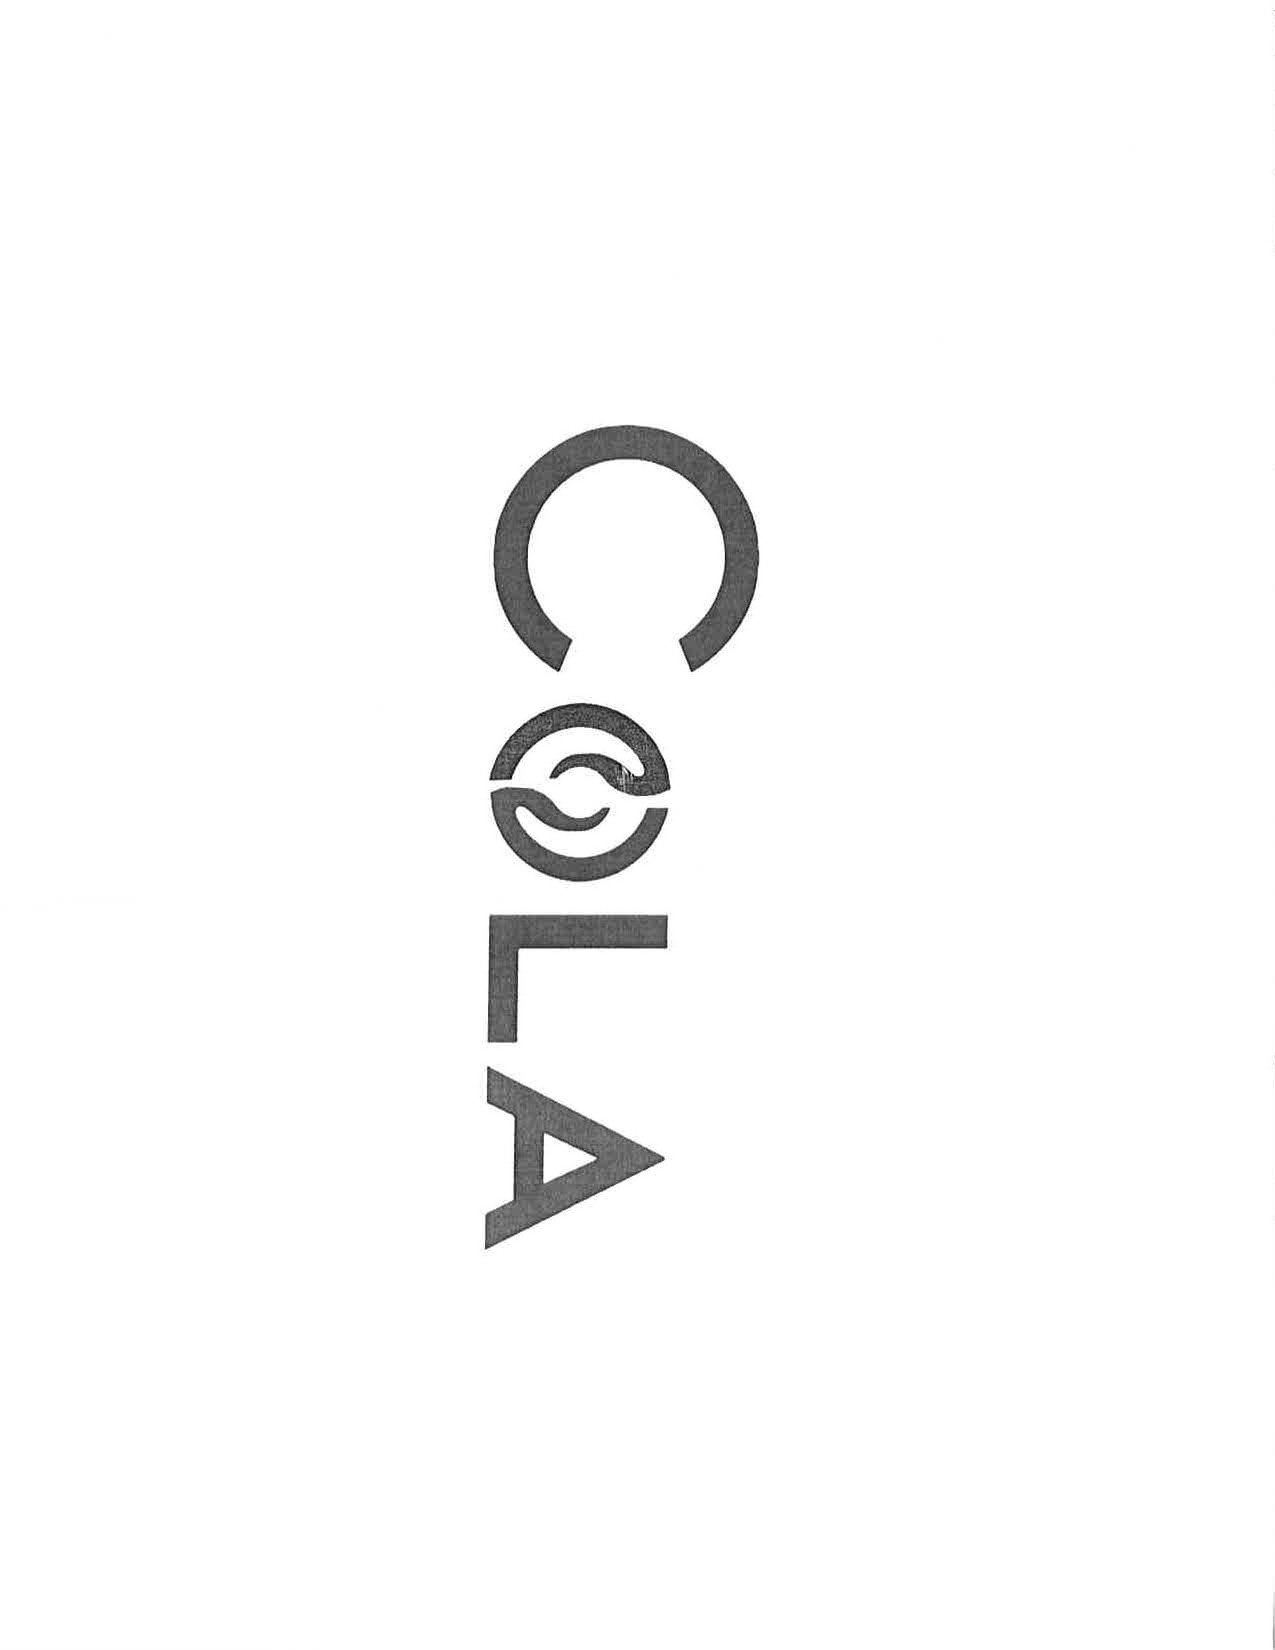 Trademark Logo COLA